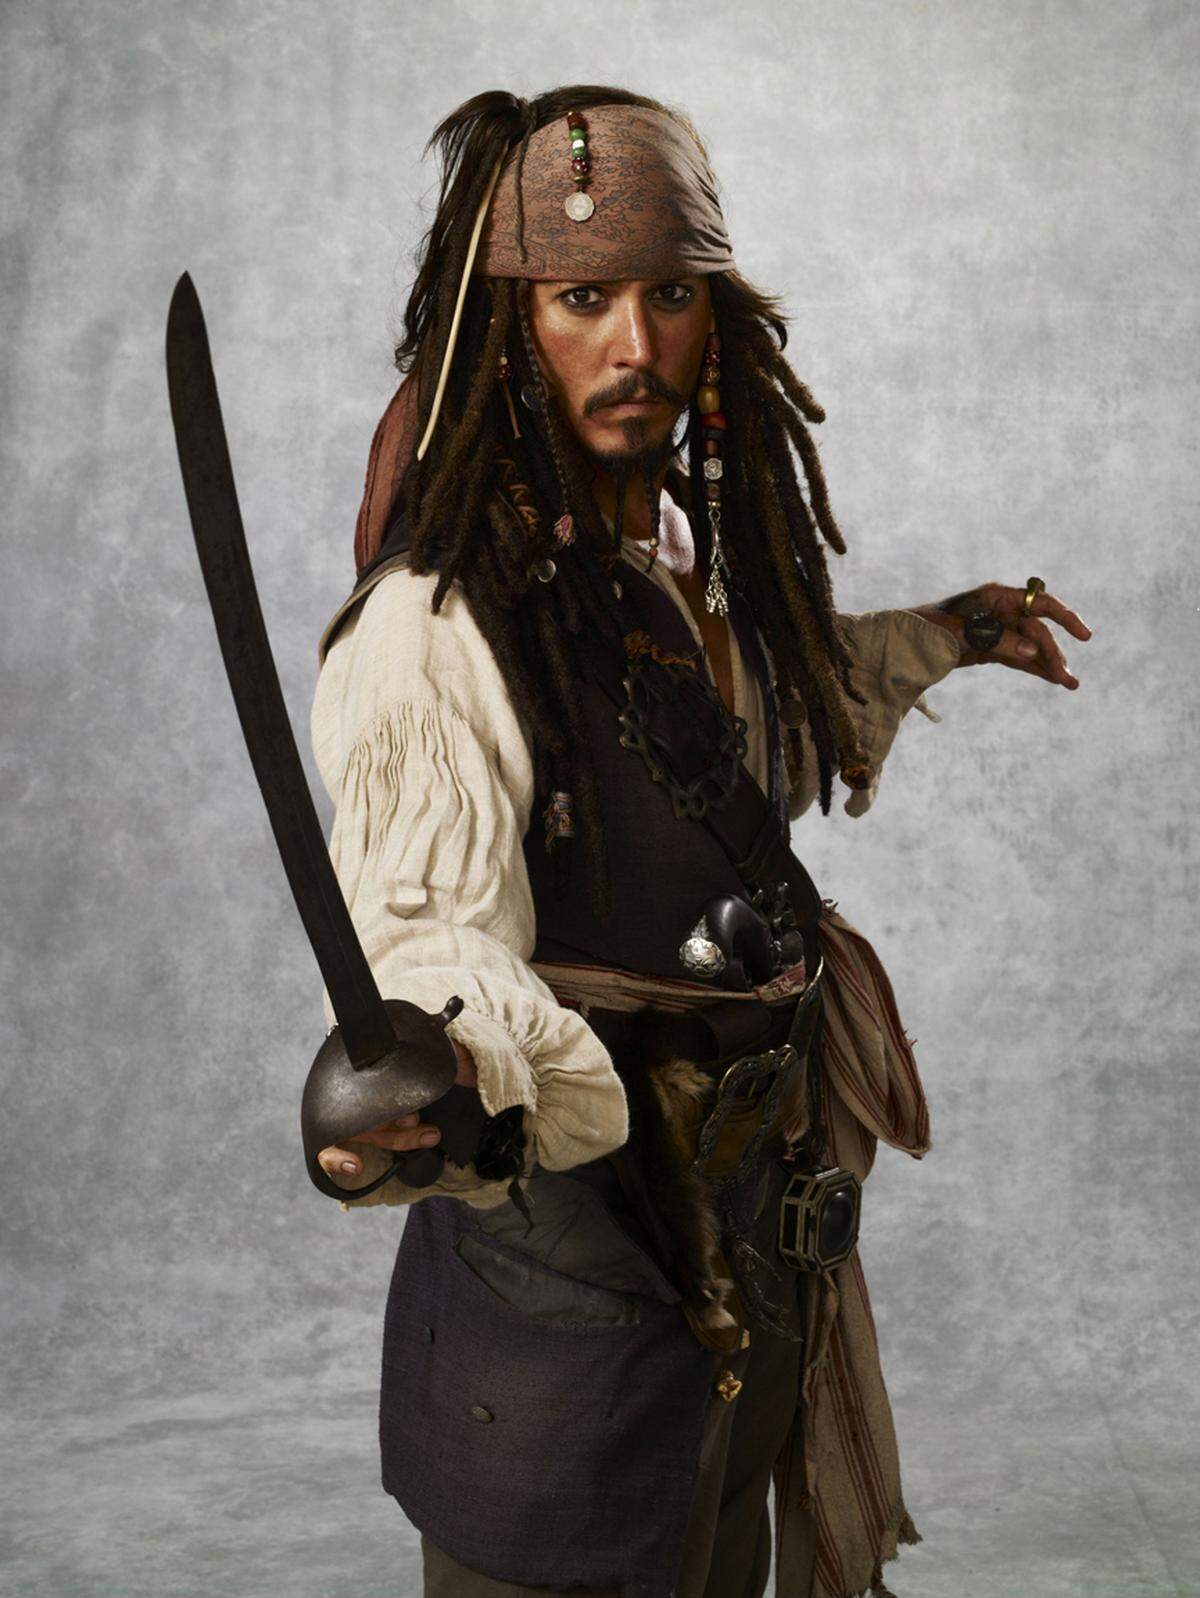 Kostüme sind für einen Film essentiell. Durch sie werden die Figuren erst dreidimensional. Johnny Depp als Jack Sparrow in "Pirates of the Caribbean: At World's End", 2007. Kostümdesign von Penny Rose. Walt Disney Pictures/The Kobal Collection.